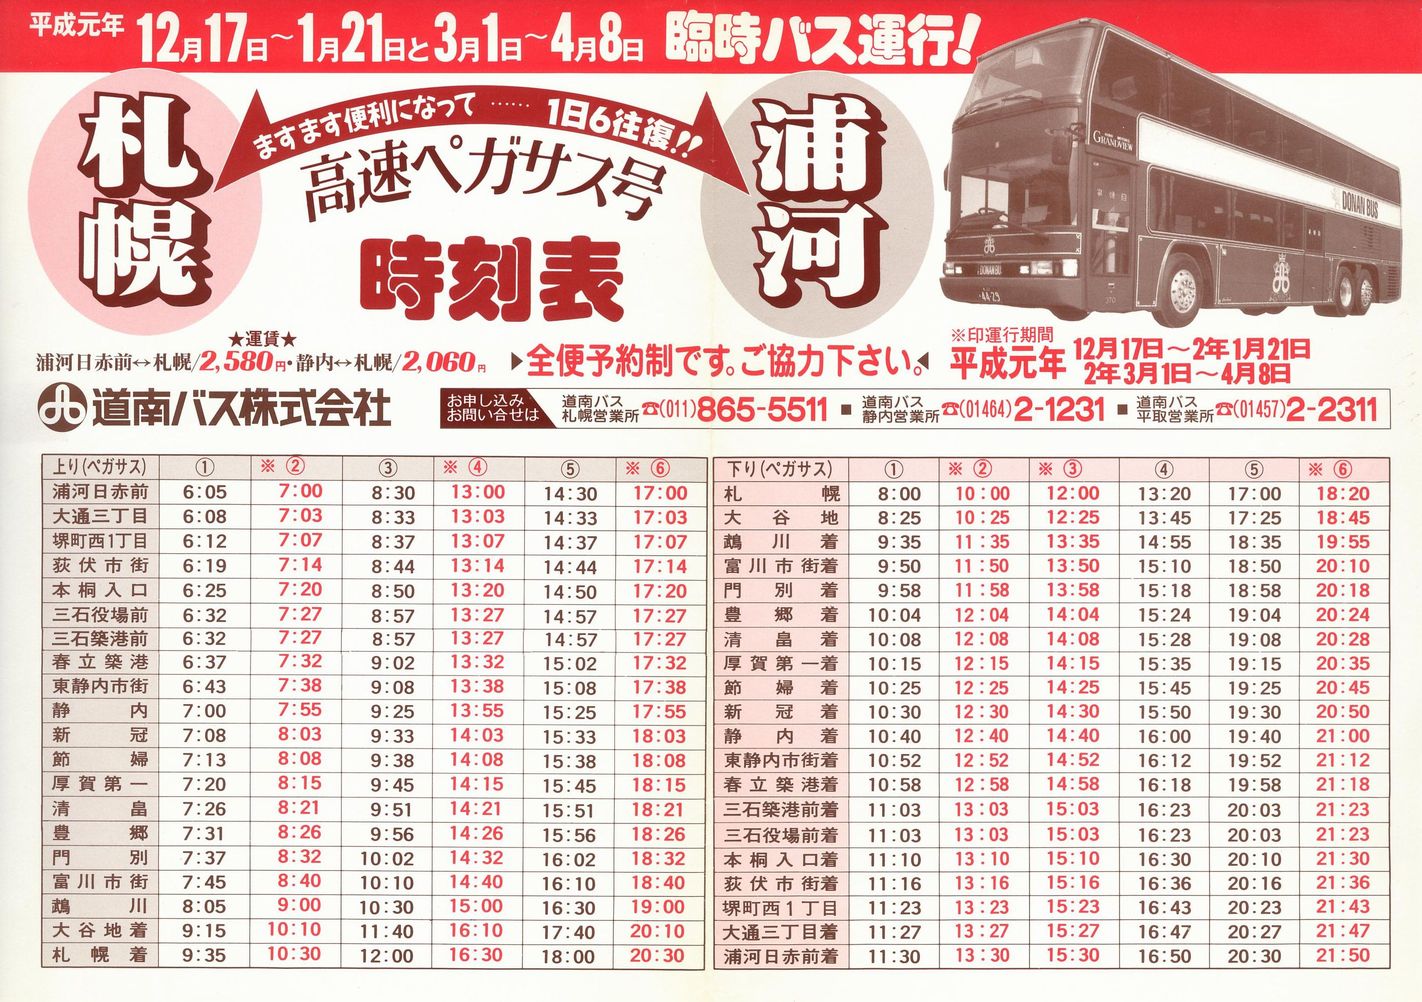 1989-12-17改正_道南バス_高速ペガサス号時刻表